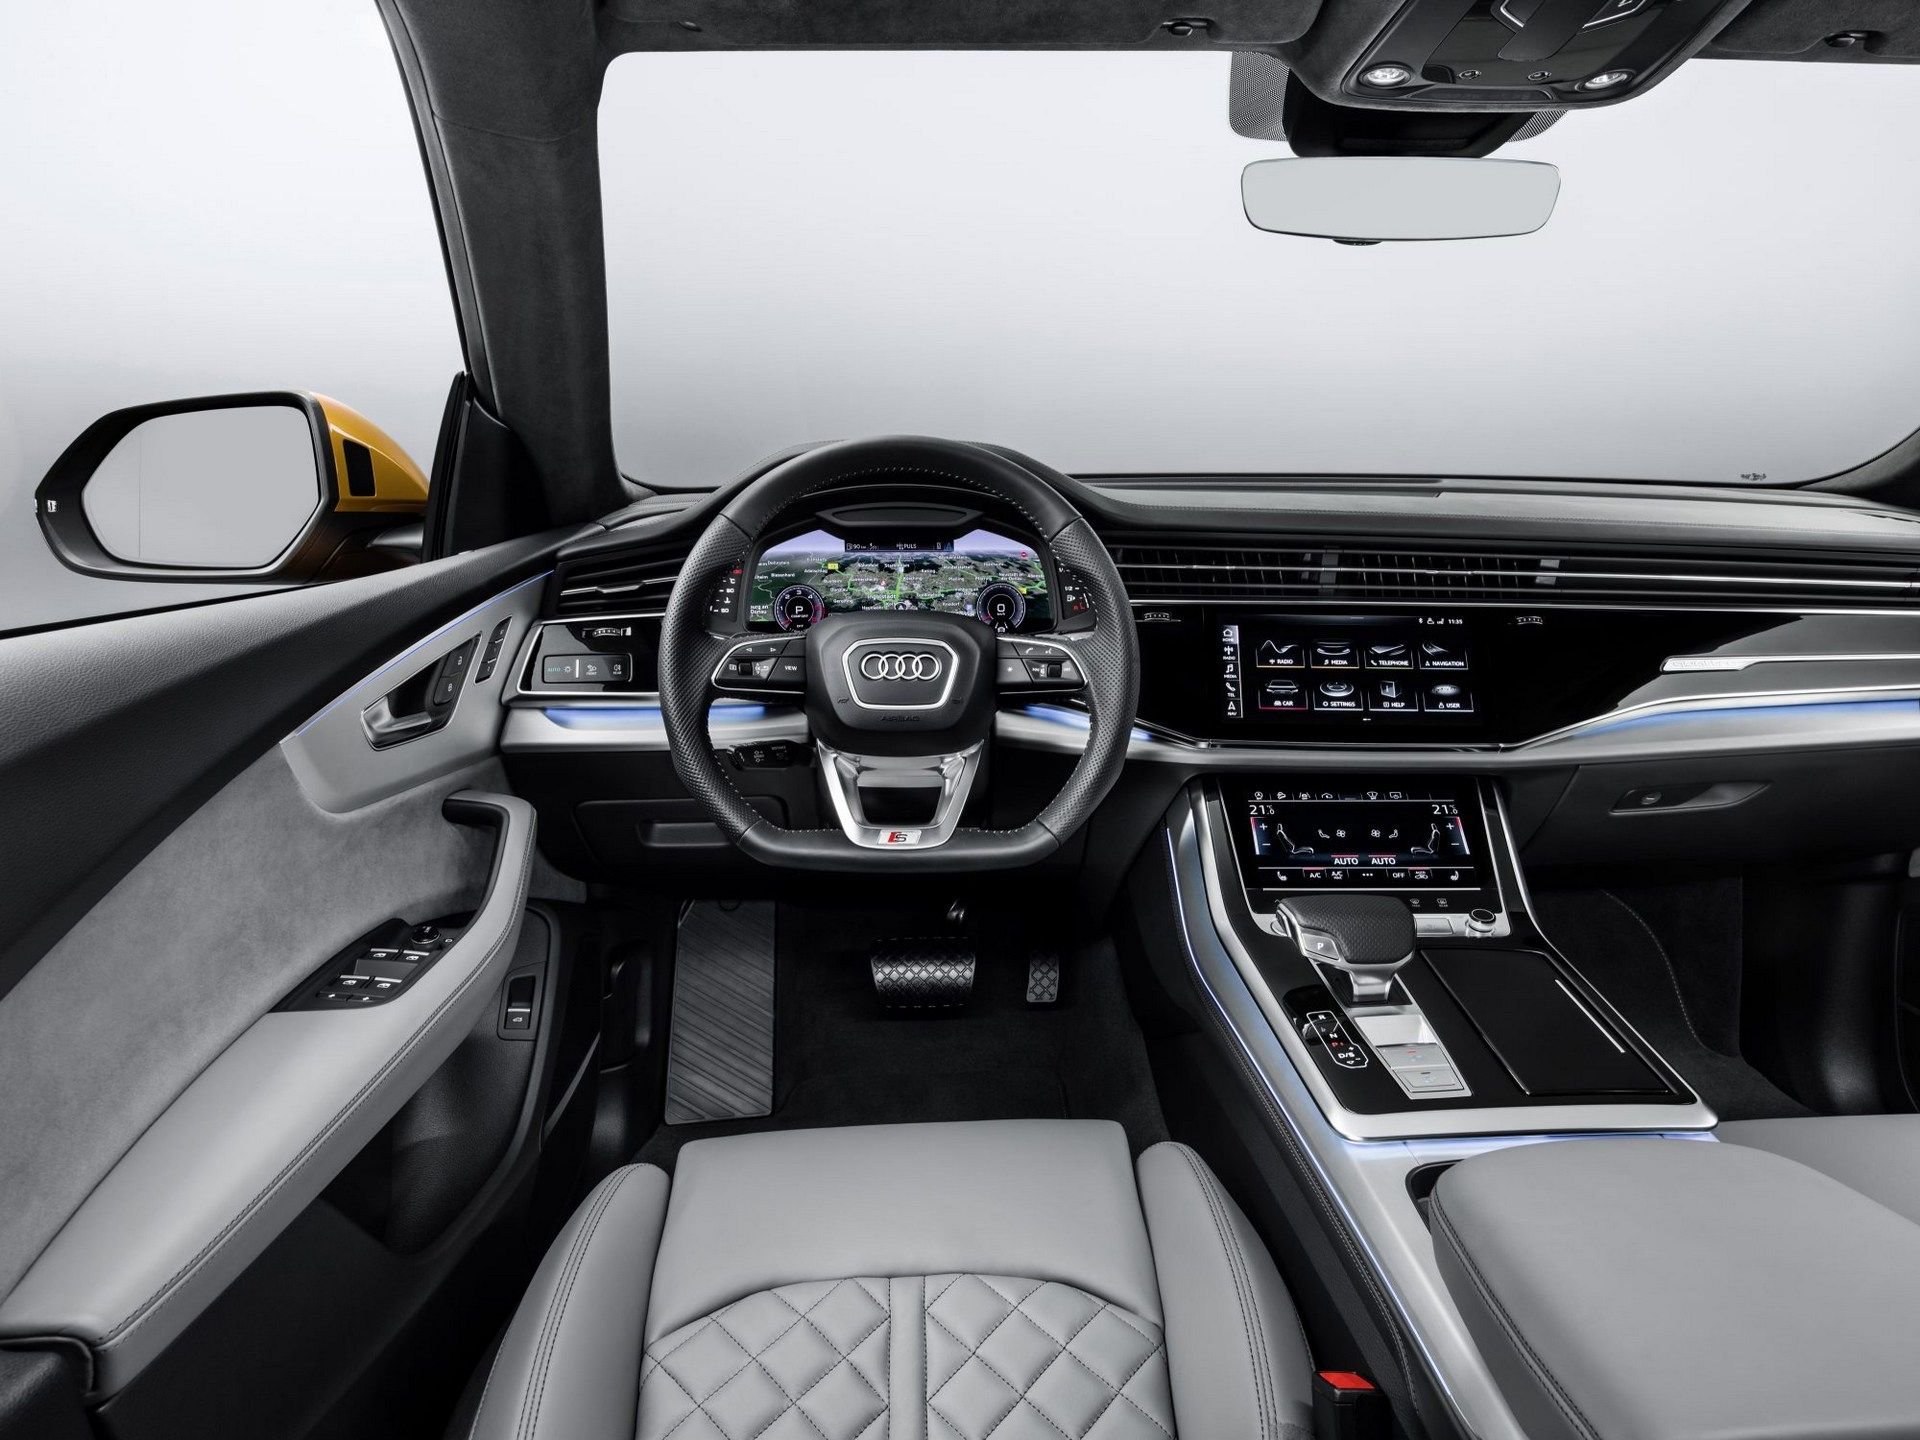 První snímky nové Audi Q8 unikly na internet ještě před premiérou